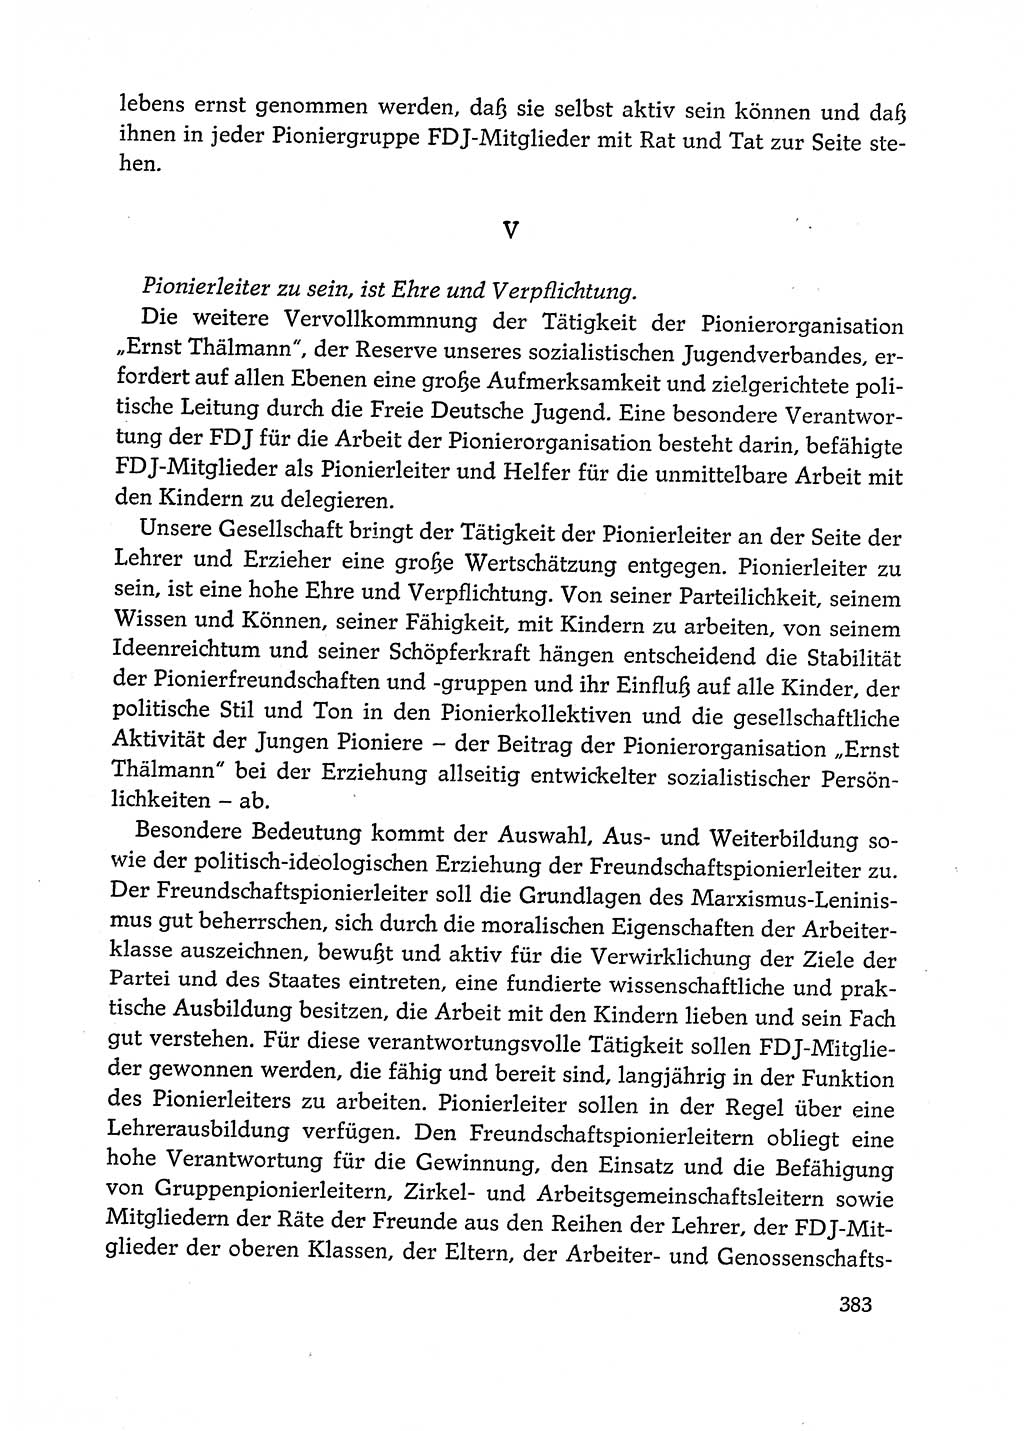 Dokumente der Sozialistischen Einheitspartei Deutschlands (SED) [Deutsche Demokratische Republik (DDR)] 1972-1973, Seite 383 (Dok. SED DDR 1972-1973, S. 383)